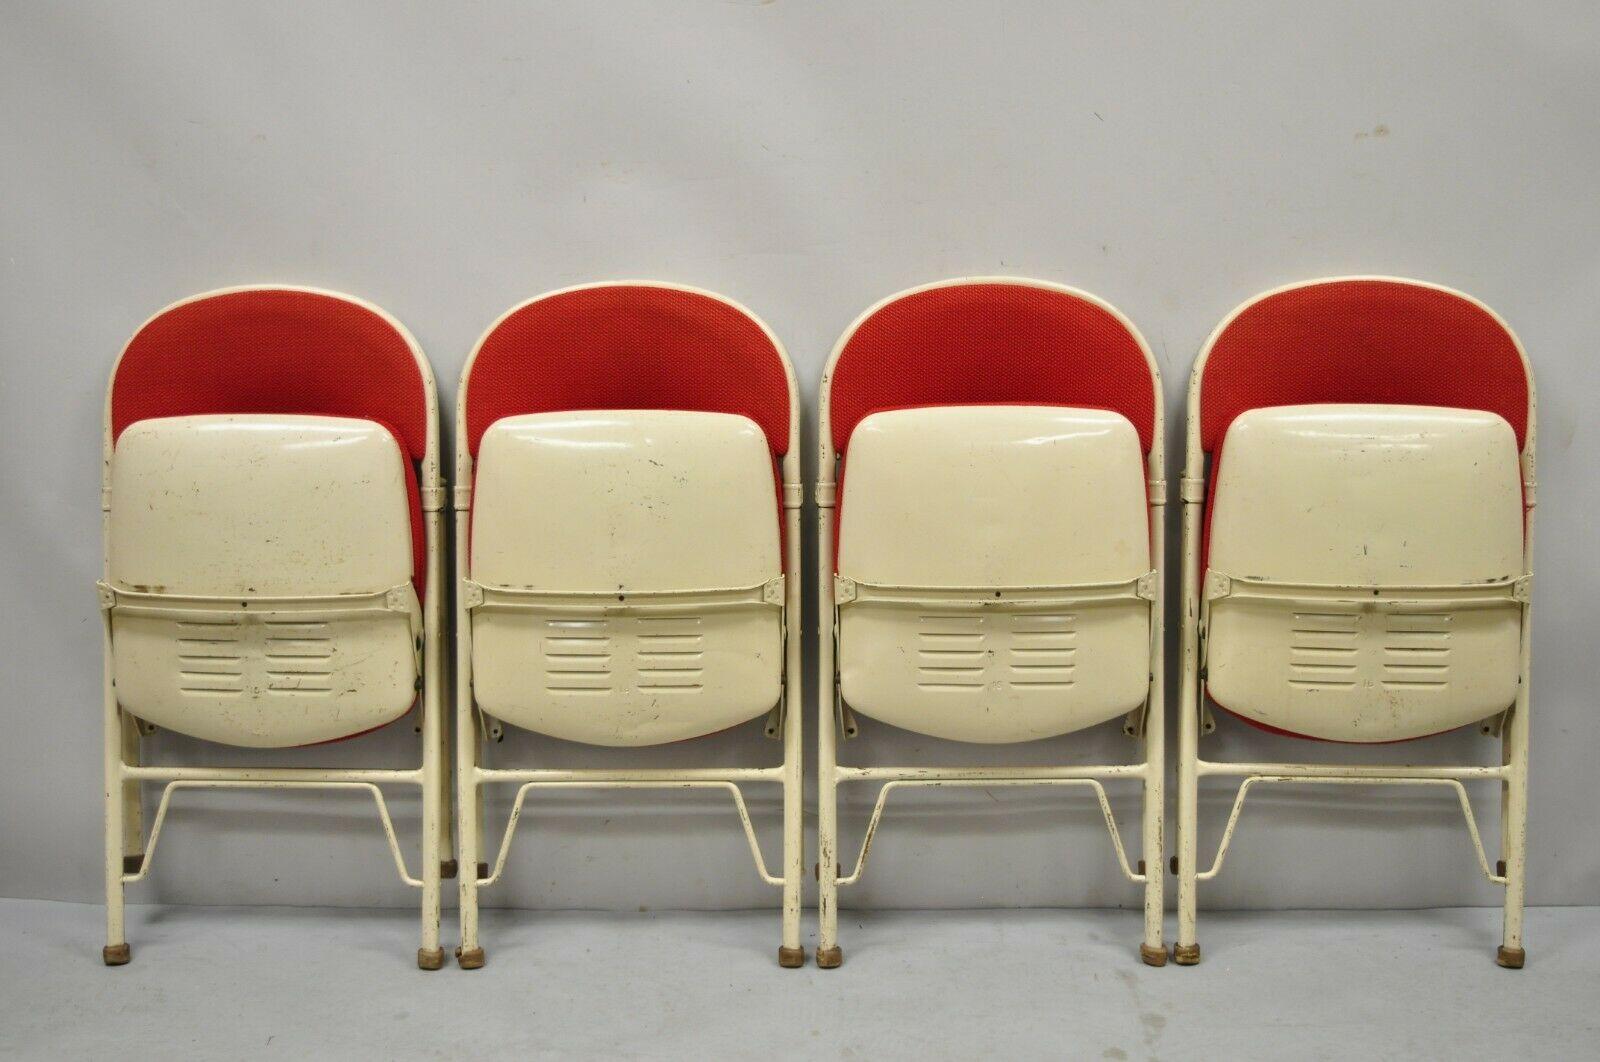 Vintage American Sitzmöbel Metallrahmen rot gepolstert Klappstühle - Set von 4. Artikel verfügt über (4) Klappstühle, einzigartige Metallrahmen, original rote Polsterung, original Label, sehr schöne Vintage-Set, Qualität amerikanische